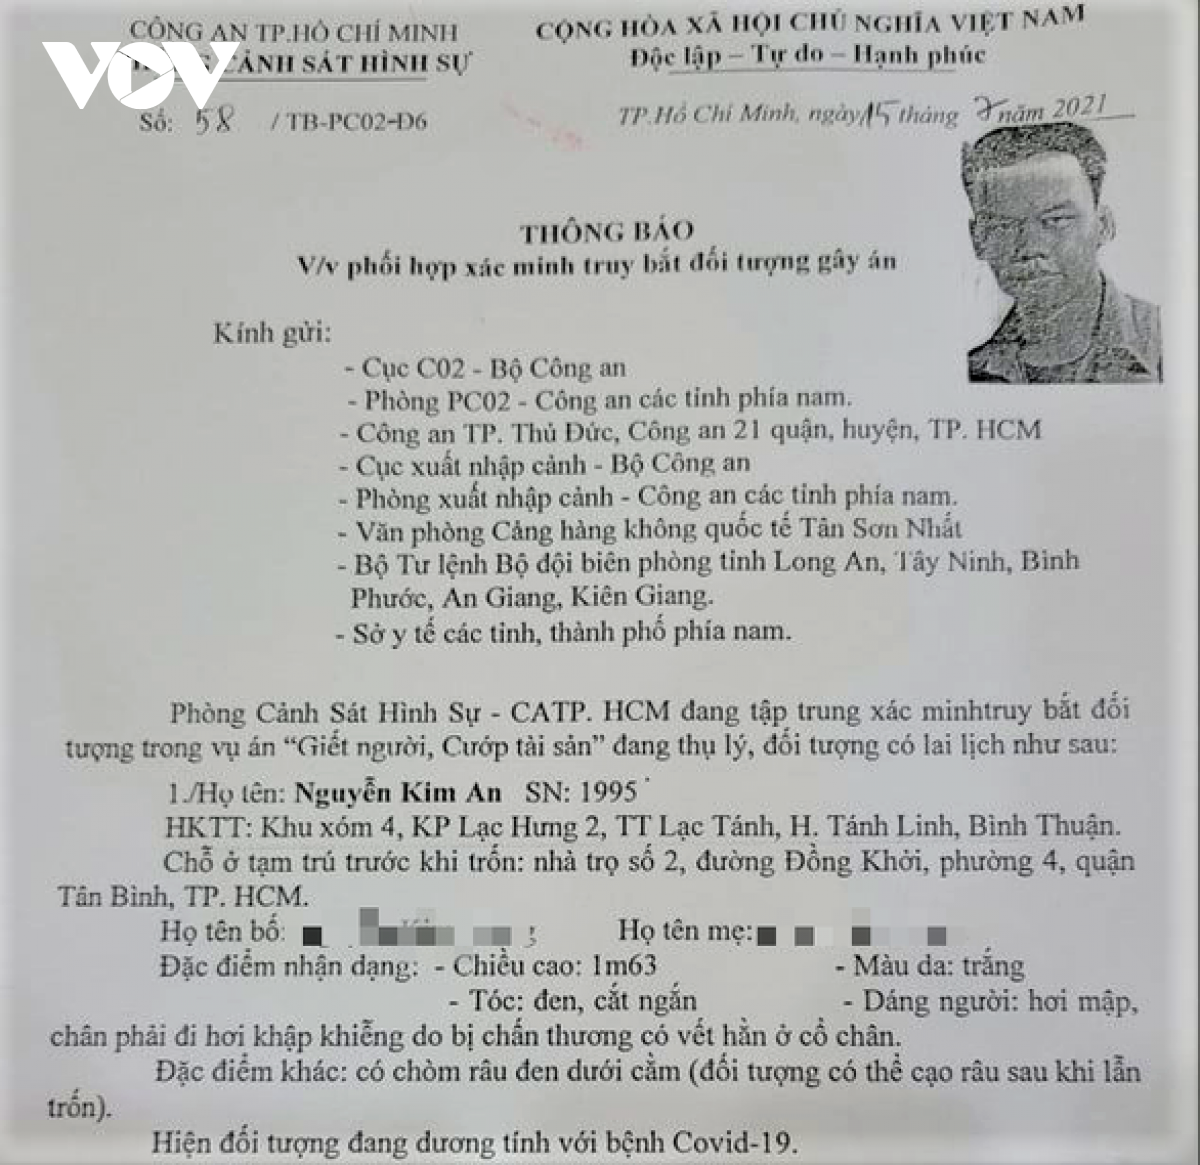 Thông báo truy bắt Nguyễn Kim An của Công an TP.HCM